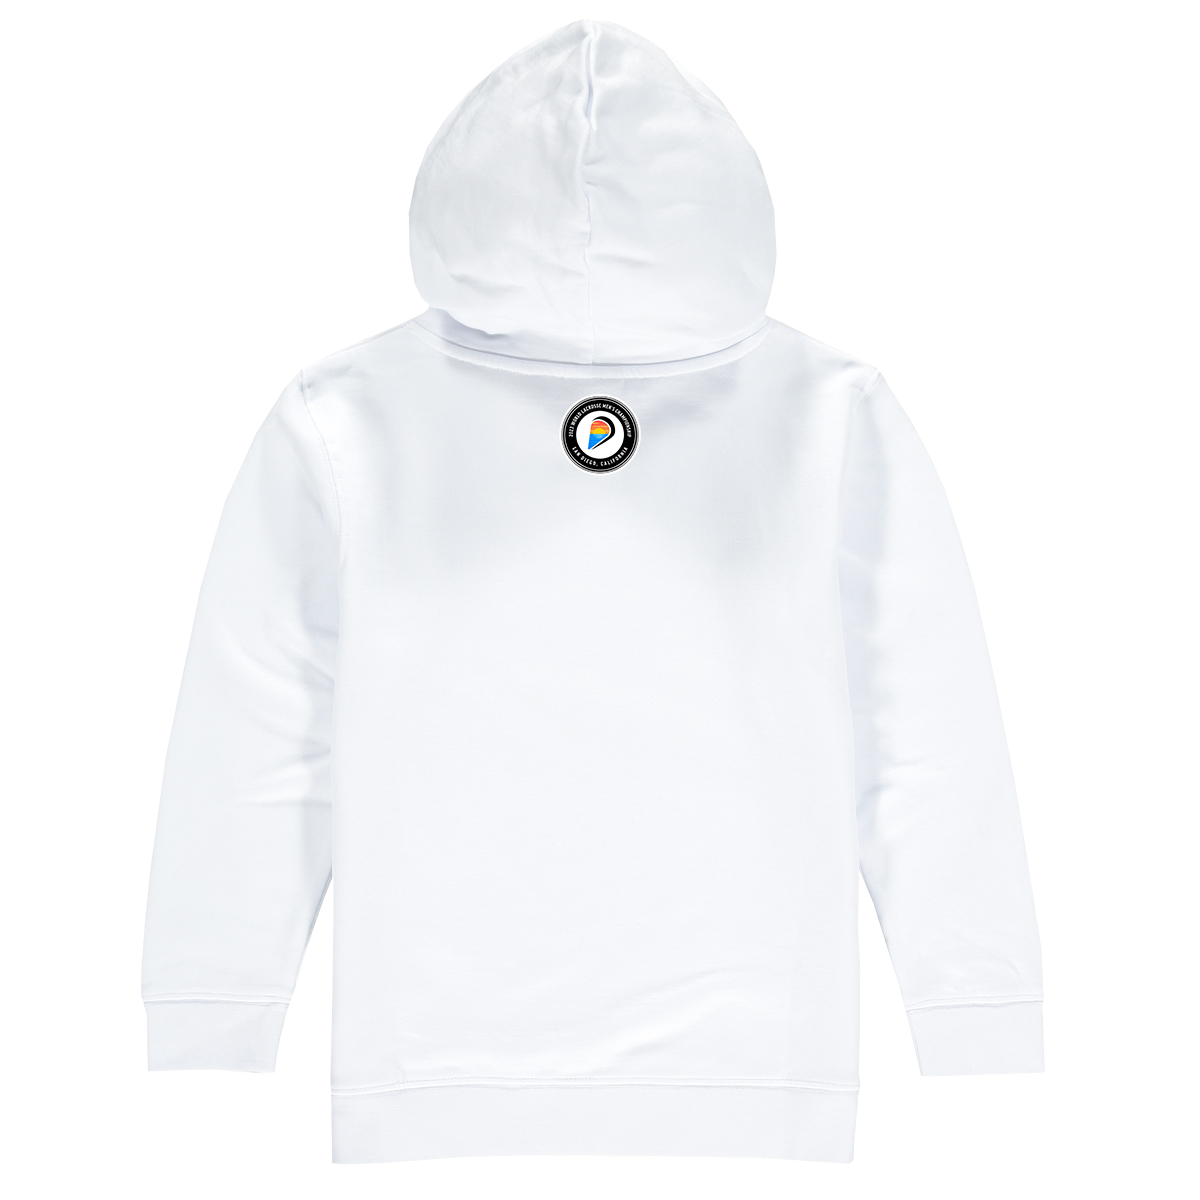 Germany Premium Unisex Hoodie Sweatshirt White